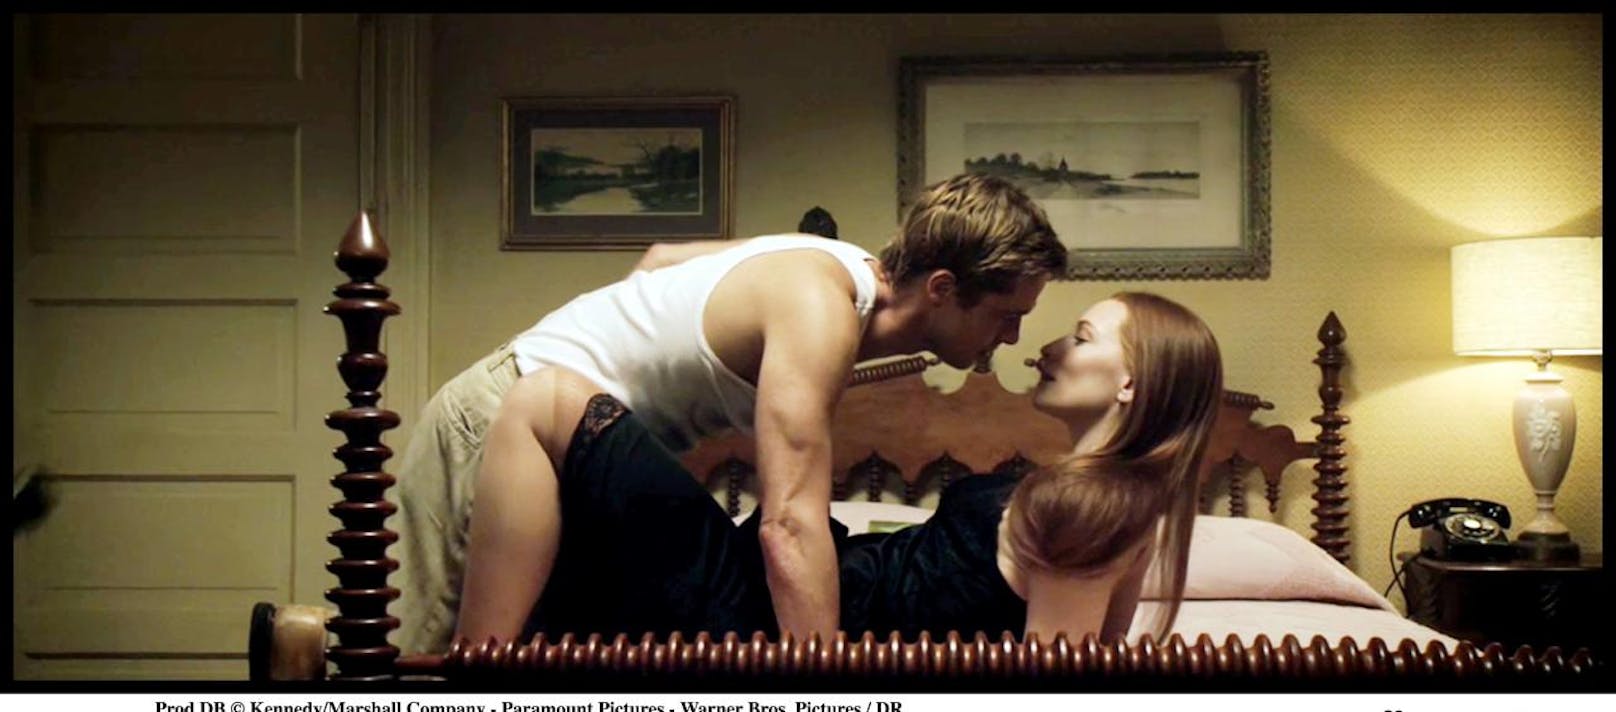 Eigentlich ist es nur schwer vorstellbar, dass Brad Pitt sich gegen eine Kussszene sträubt  Schließlich hat er schon unzählige Kolleginnen küssen müssen. Doch bei Cate Blanchett in <b>"Der seltsame Fall des Benjamin Button" (2008)</b> weigerte er sich. Der Grund: Zu der Zeit kriselte es gerade zwischen Pitt und seiner Frau Angelina Jolie. Er wollte sie nicht verärgern.